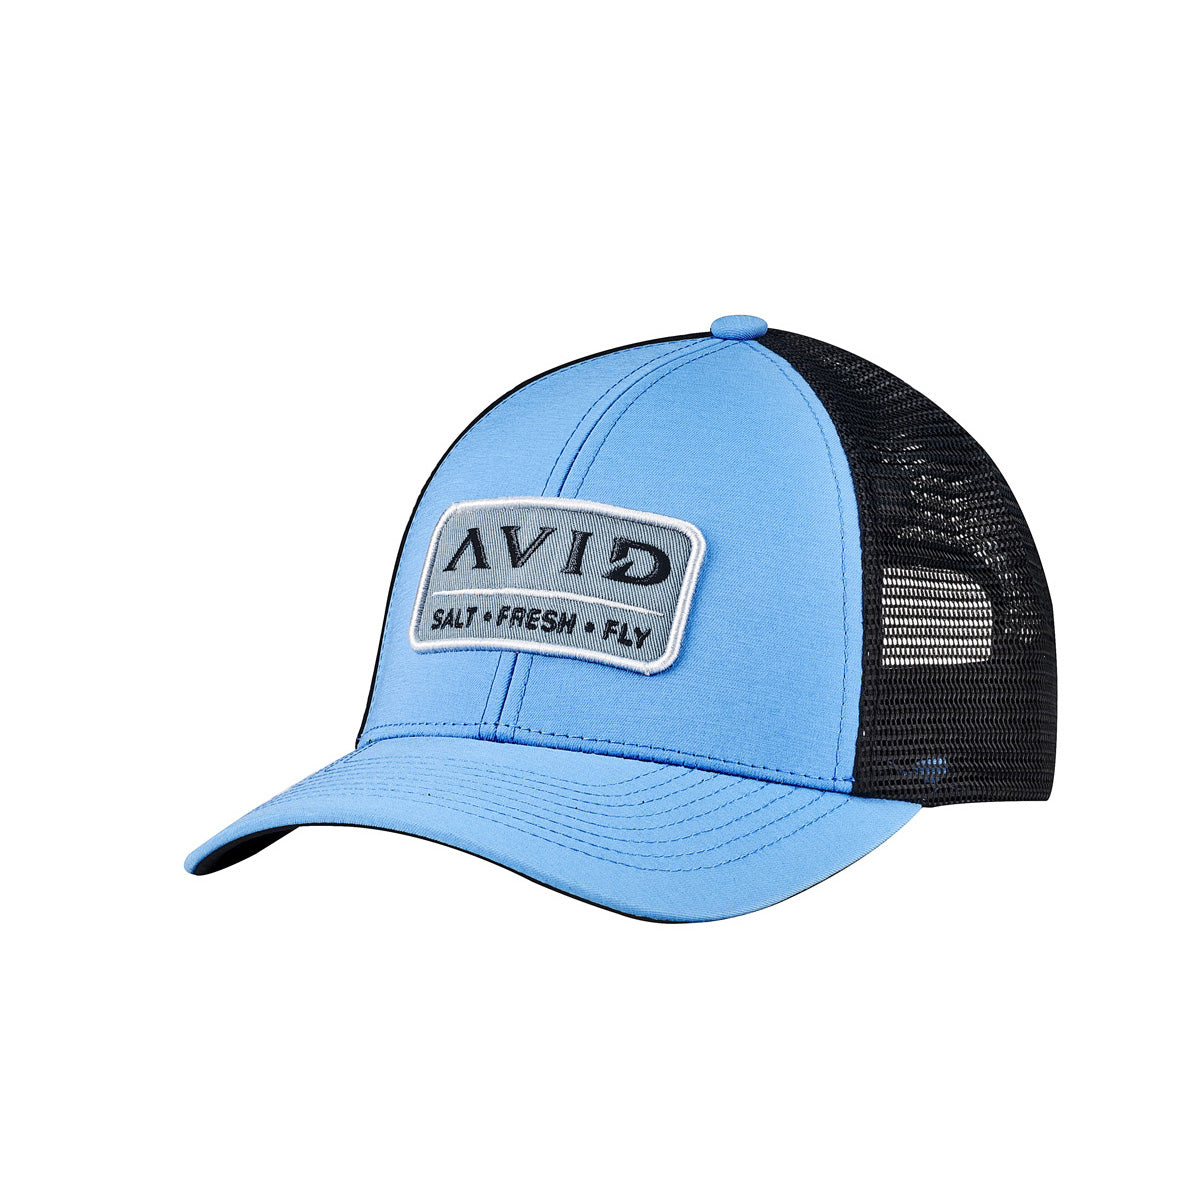 Avid All Waters Trucker Hat